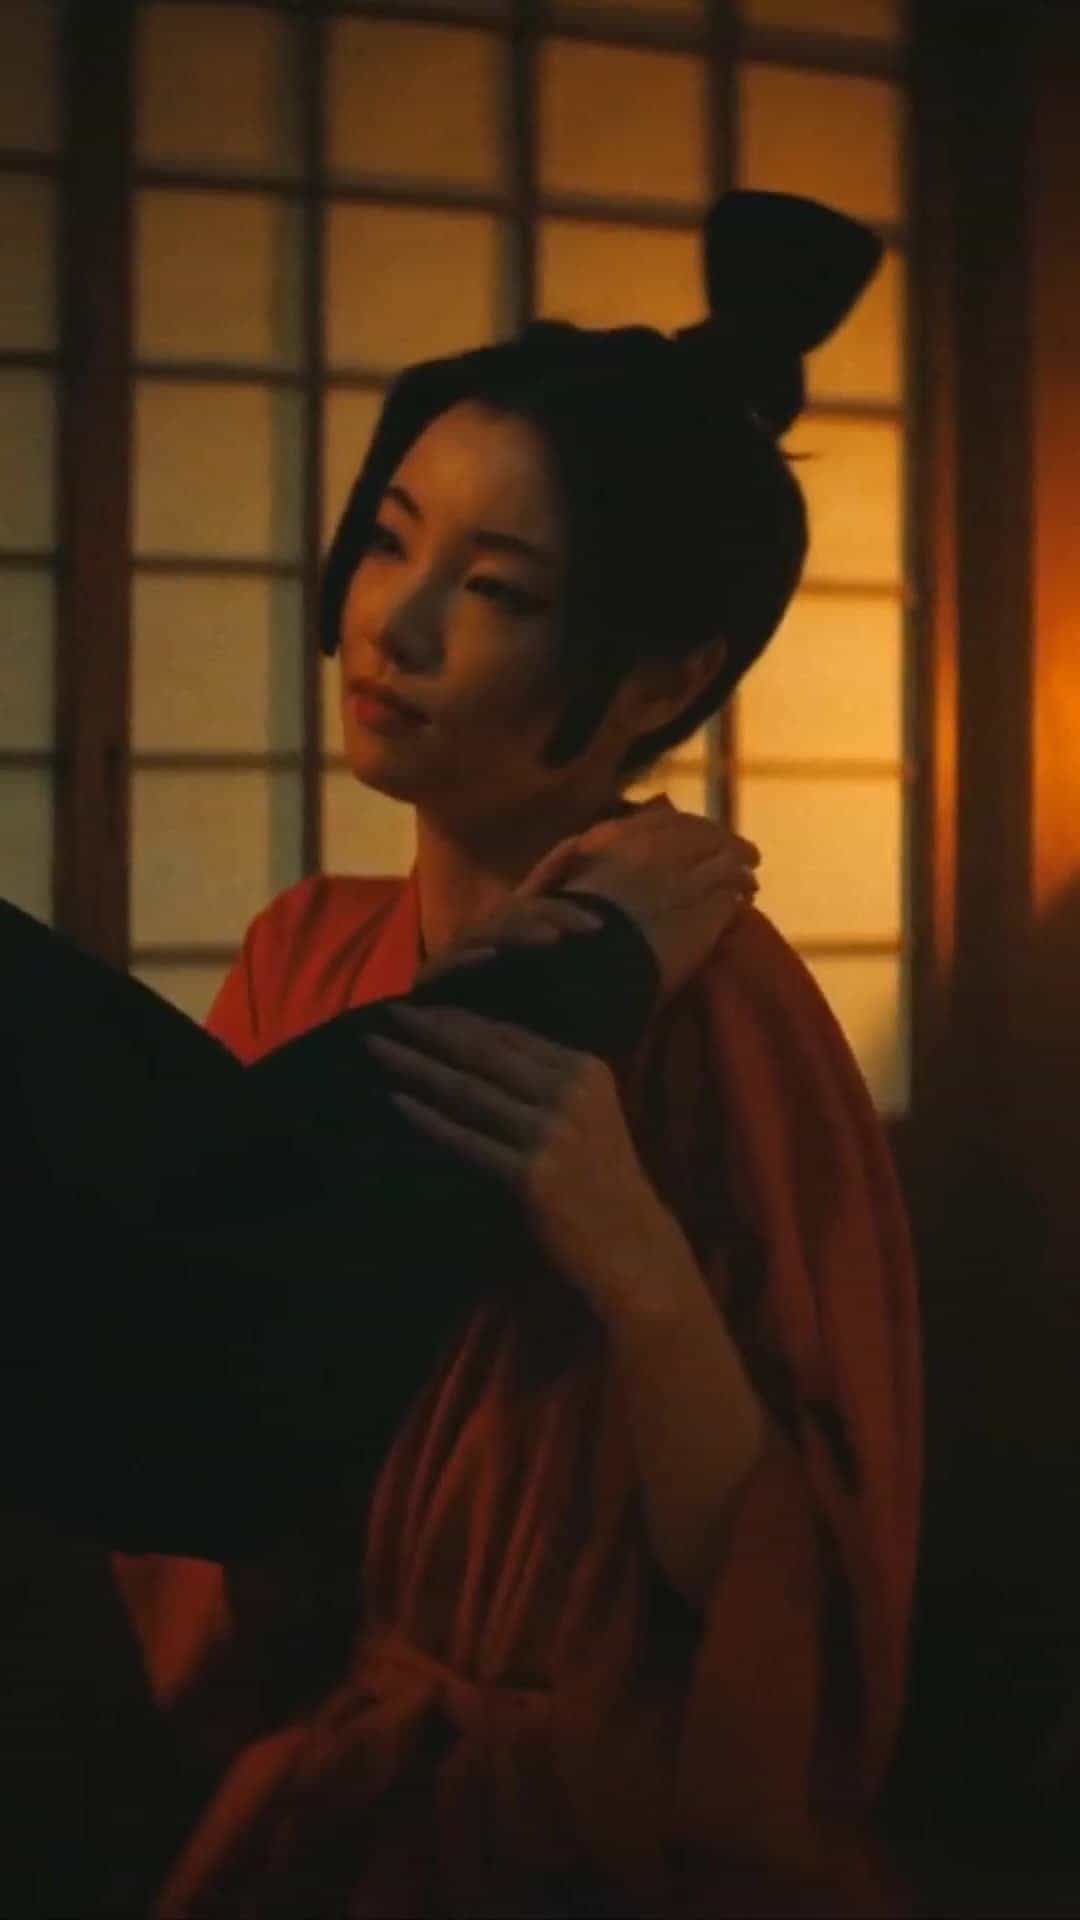 Yuka Kouri | Shogun (2014)